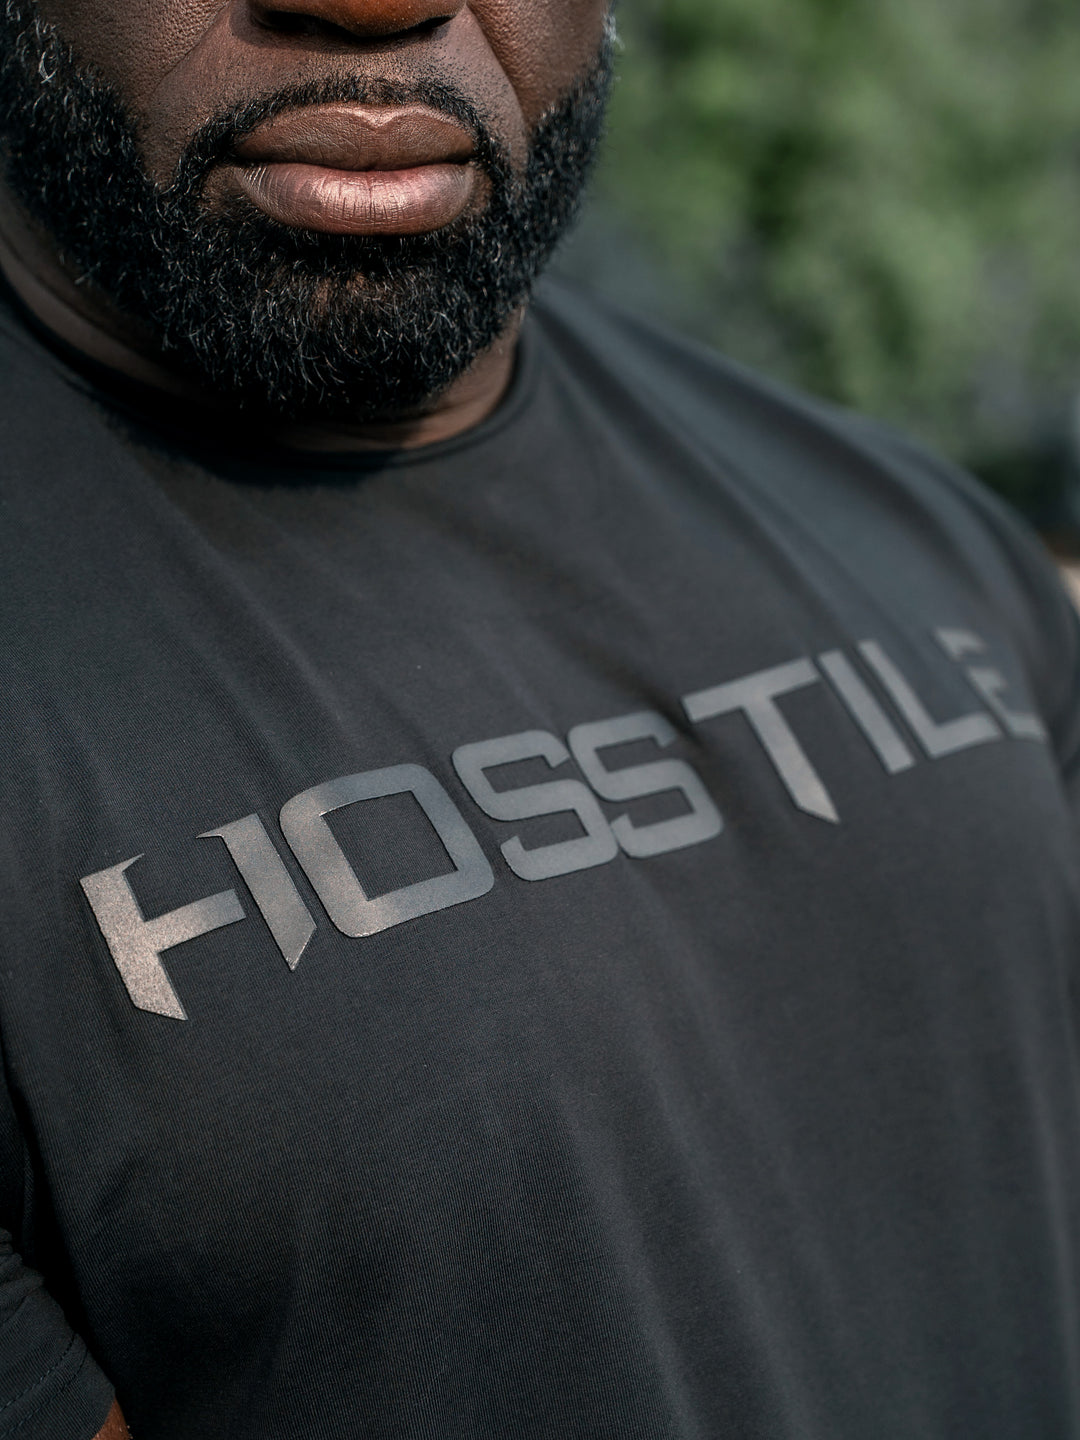 Uplift Men's Workout T-Shirt - Black - Model Bodybuilder Samson Dauda#color_black